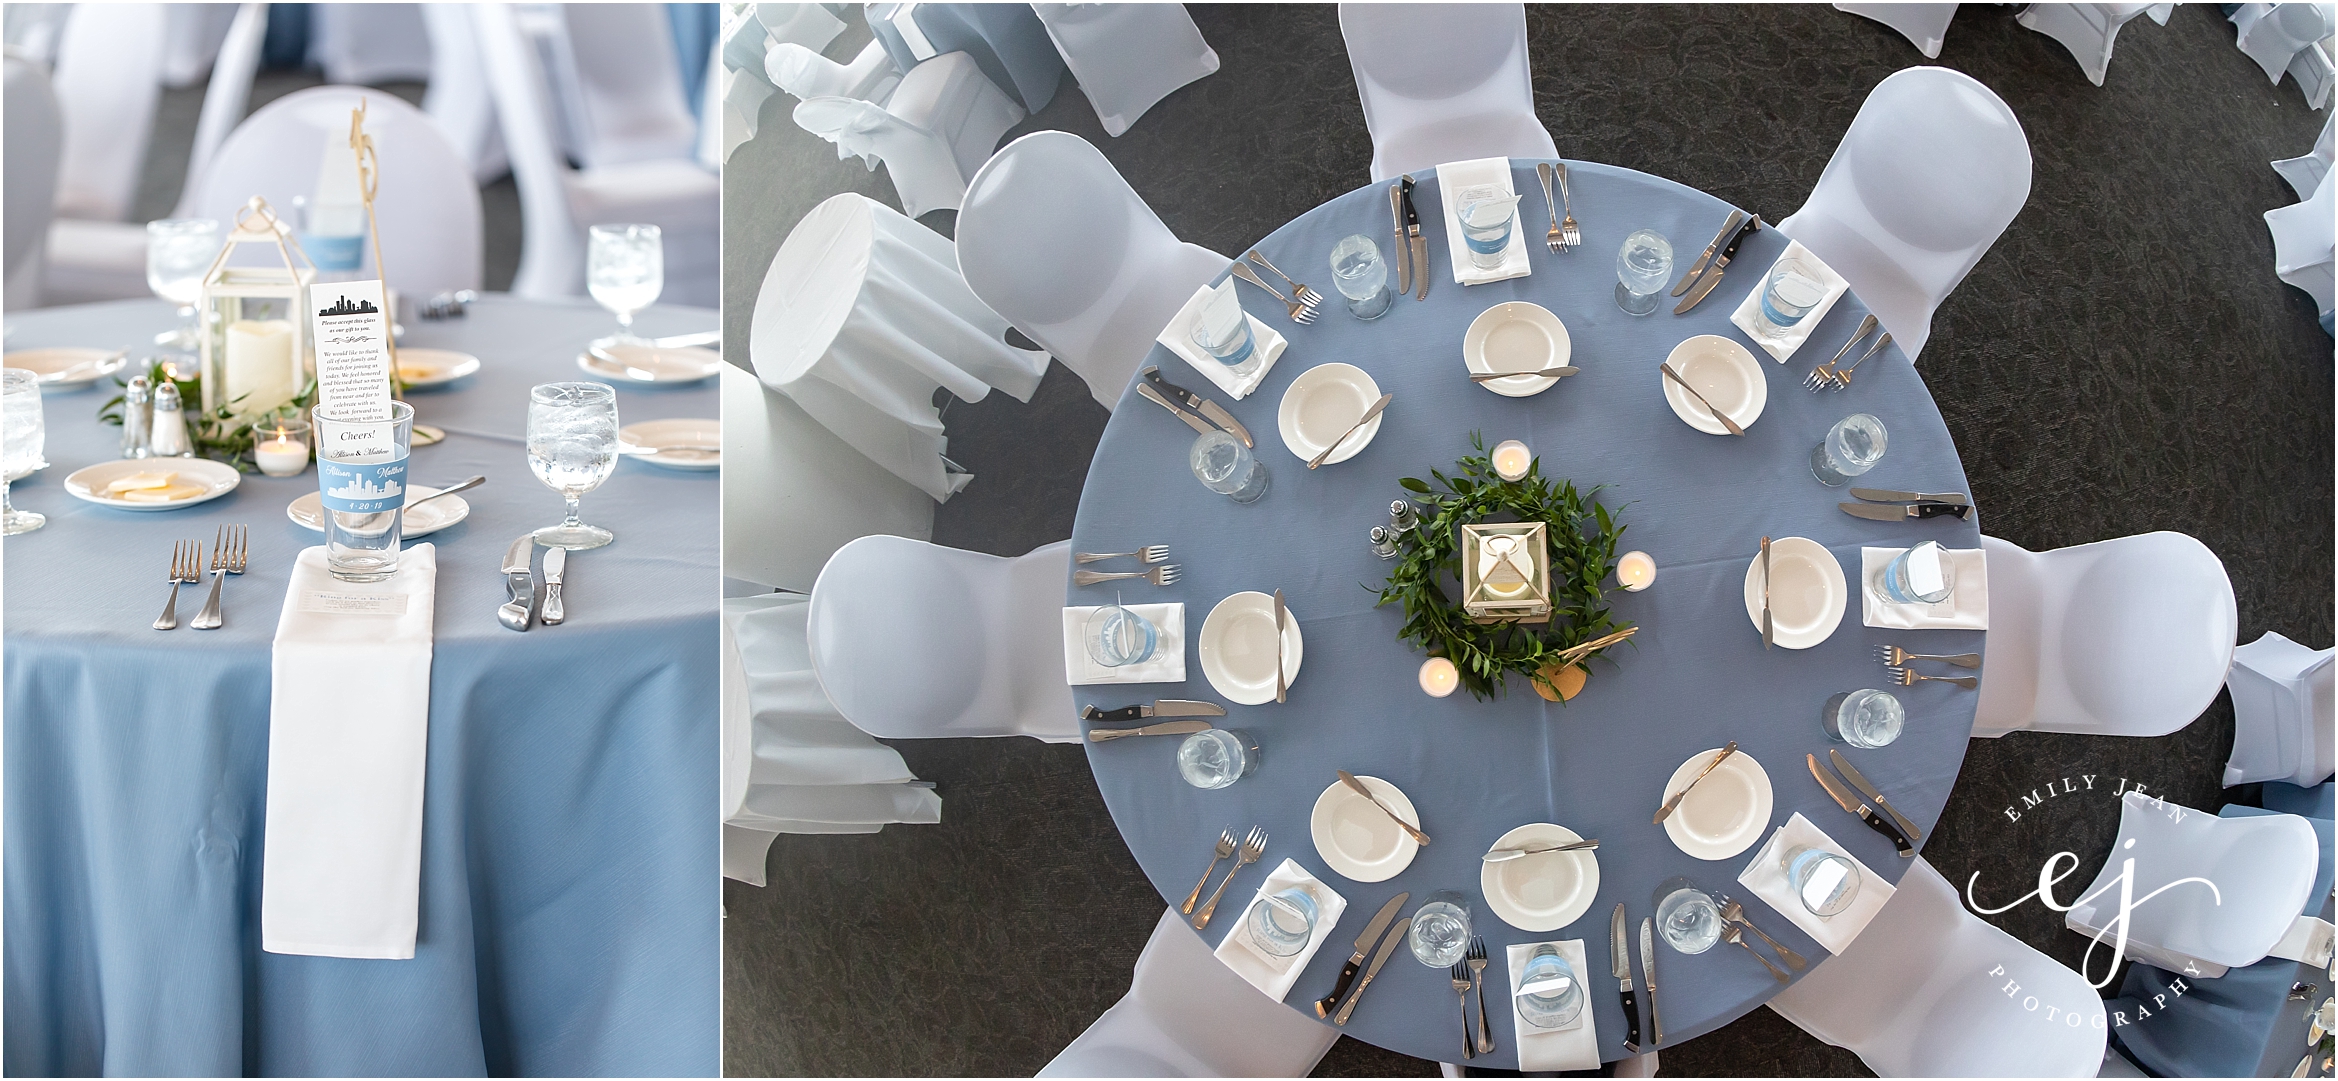 the pilot house lake blue wedding decor table setting